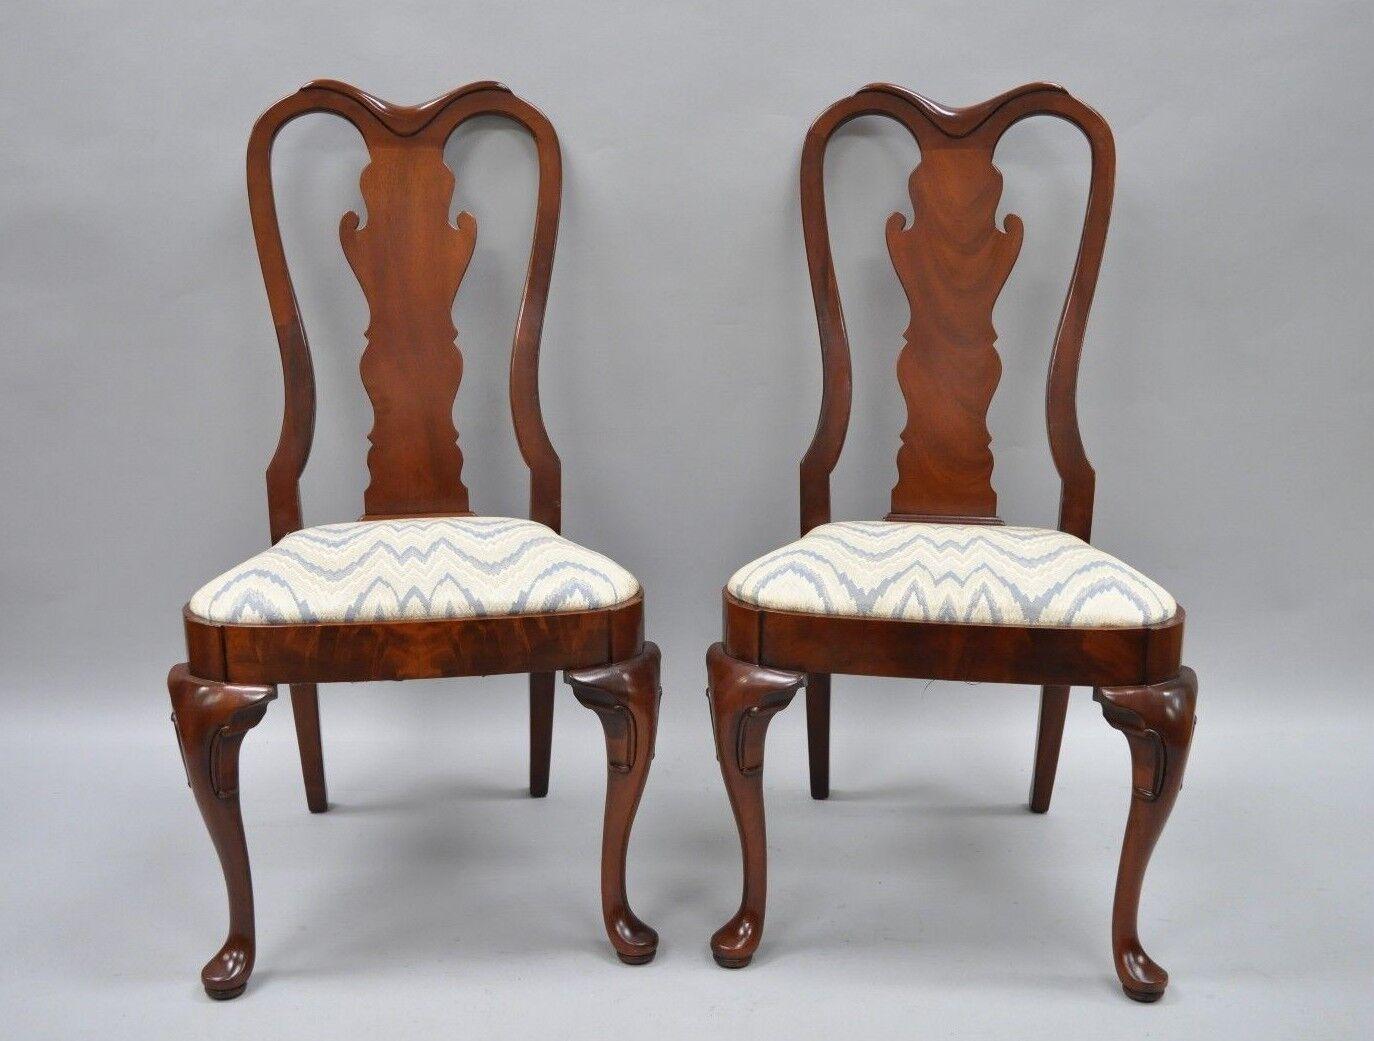 Paire de chaises de salle à manger vintage en acajou de style Queen Anne. L'article se caractérise par des pieds de type Queen Anne, des cadres en bois massif, un magnifique grain de bois, une assise rembourrée et une fabrication américaine de